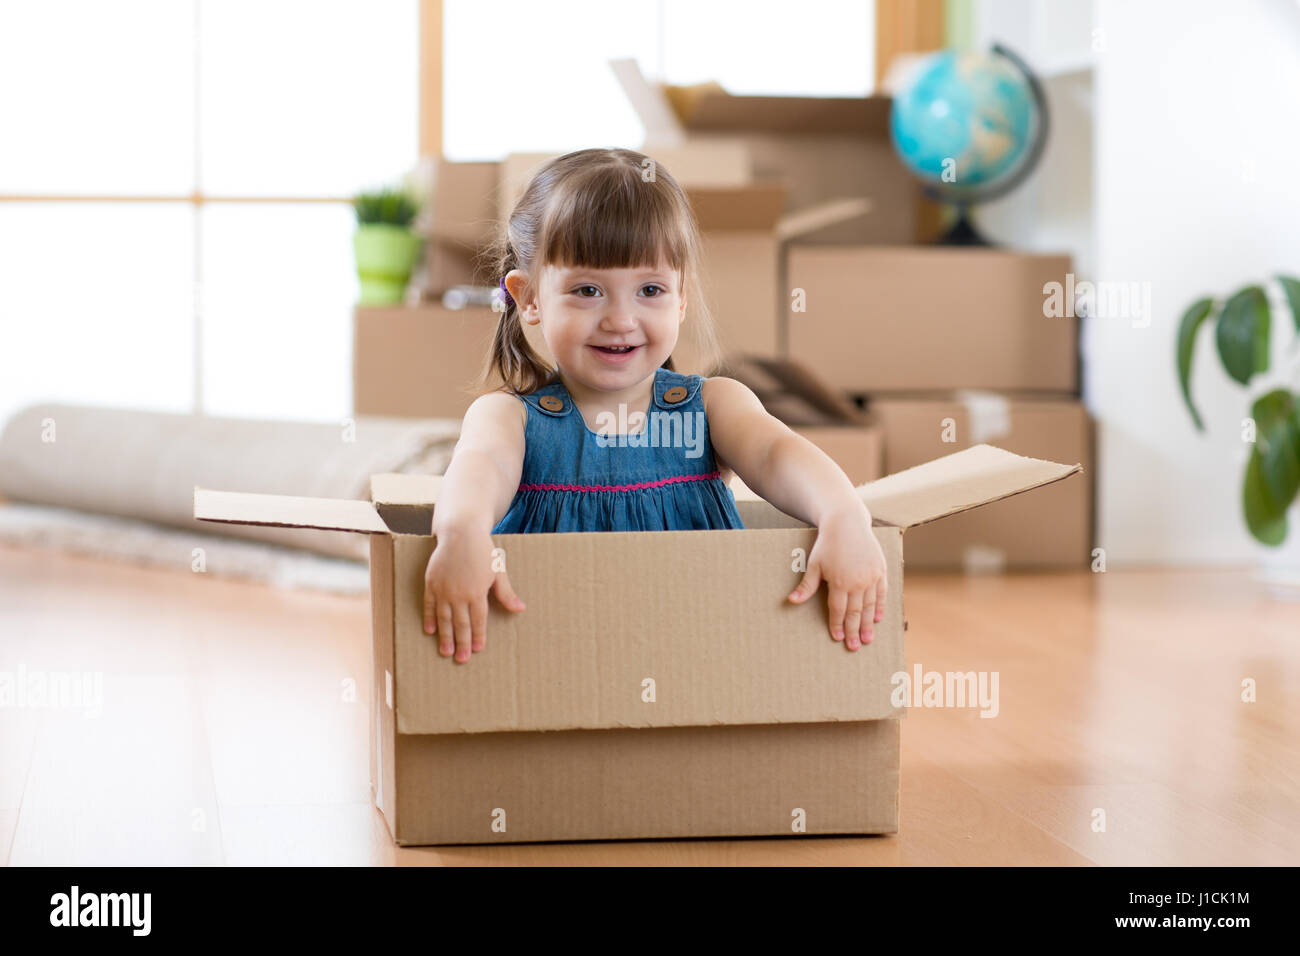 Il passaggio a un nuovo appartamento. Bambino felice in una scatola di cartone. Foto Stock